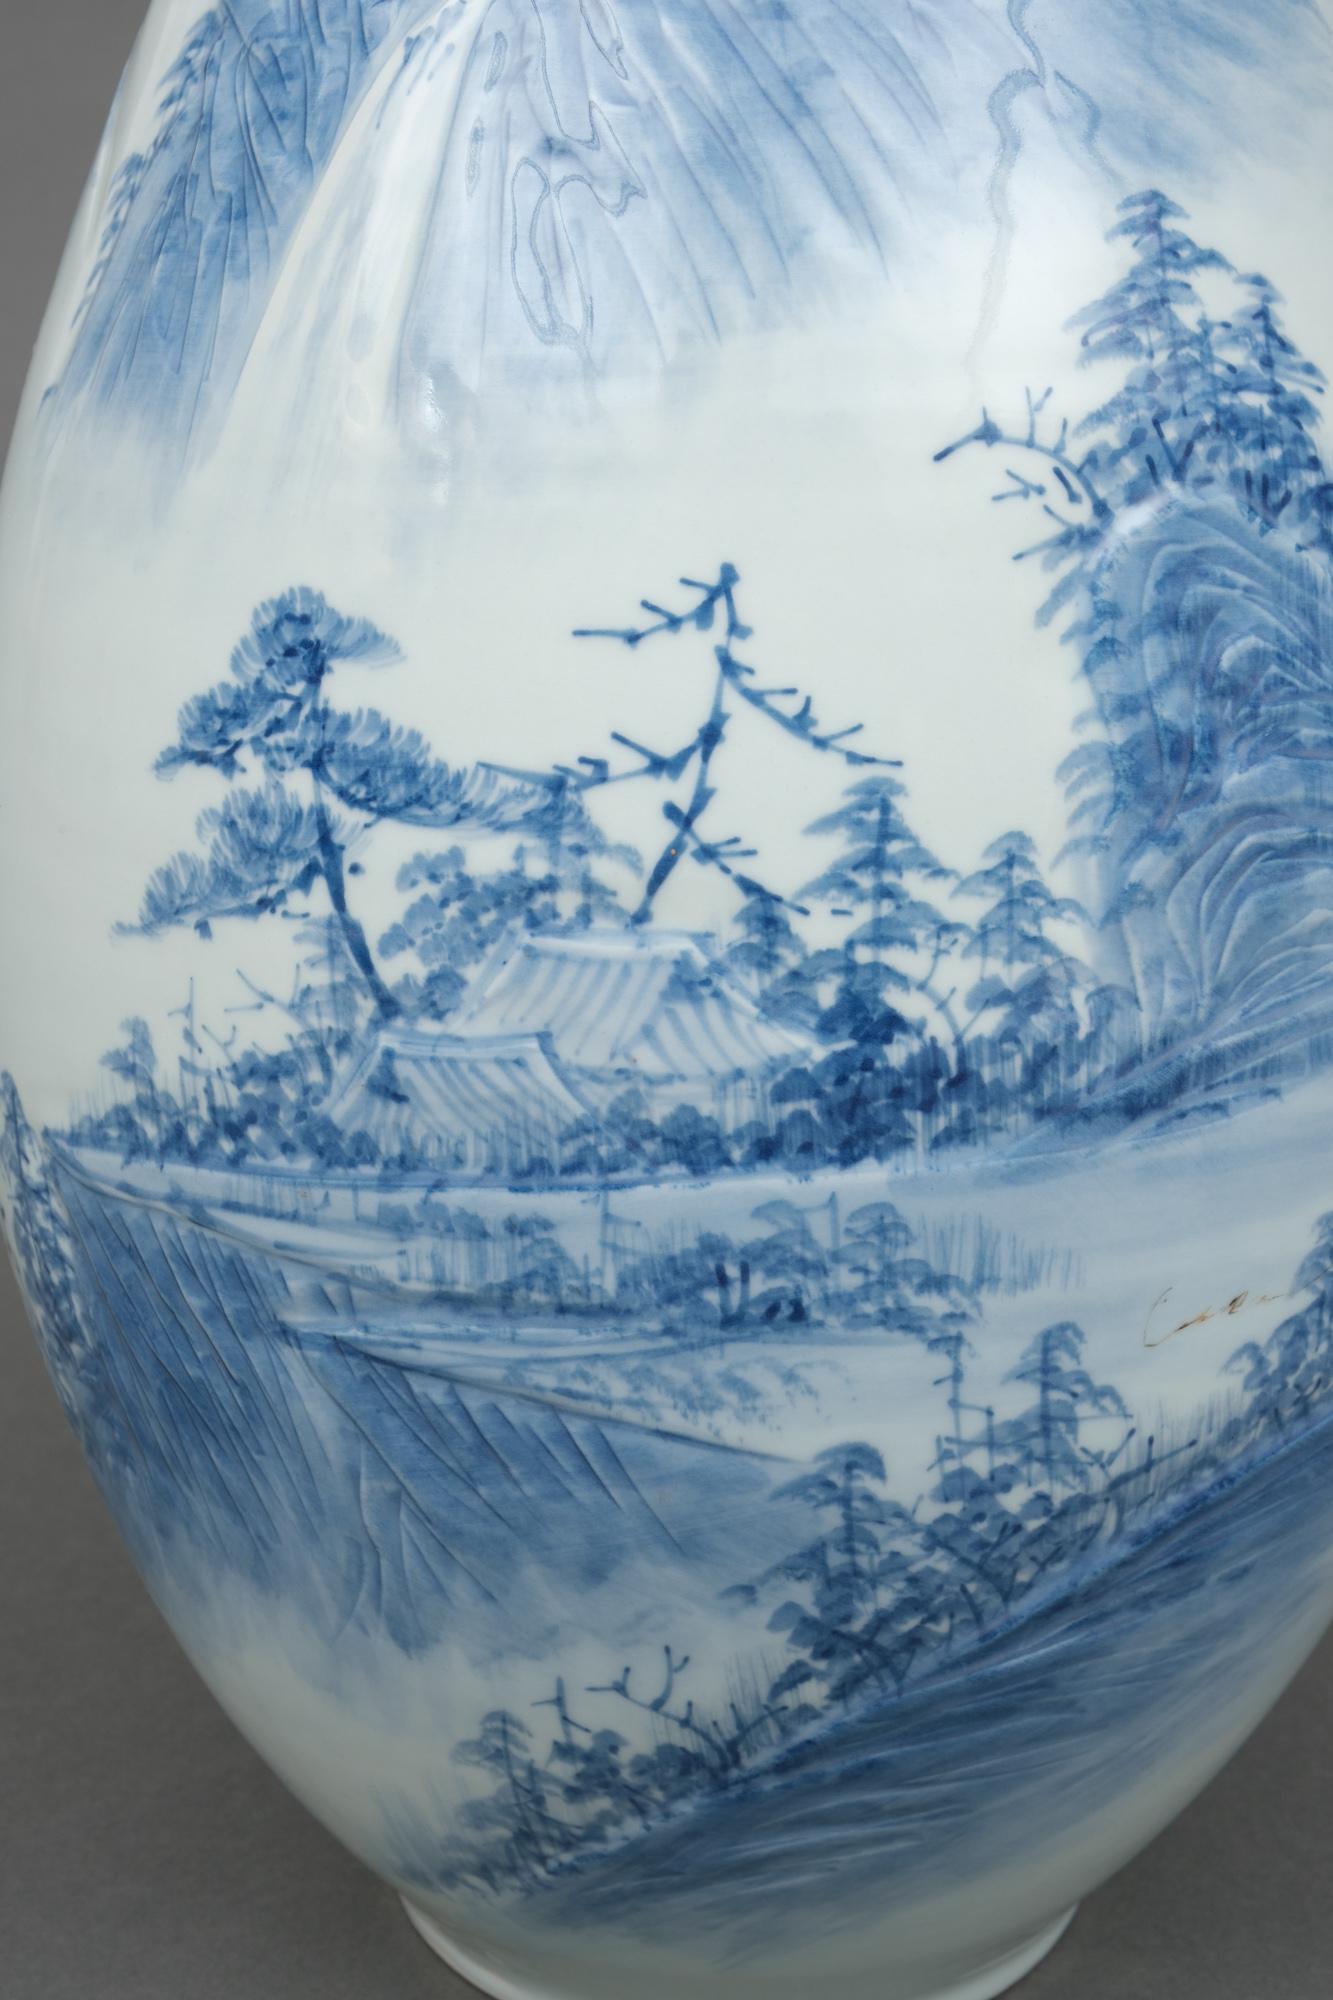 Très grand vase en porcelaine de forme ovoïde avec un beau motif de paysage montagneux bleu et blanc accentué par des détails en bas-relief. Le haut du vase se termine par un élégant petit col.

Votre regard se pose d'abord sur une maison